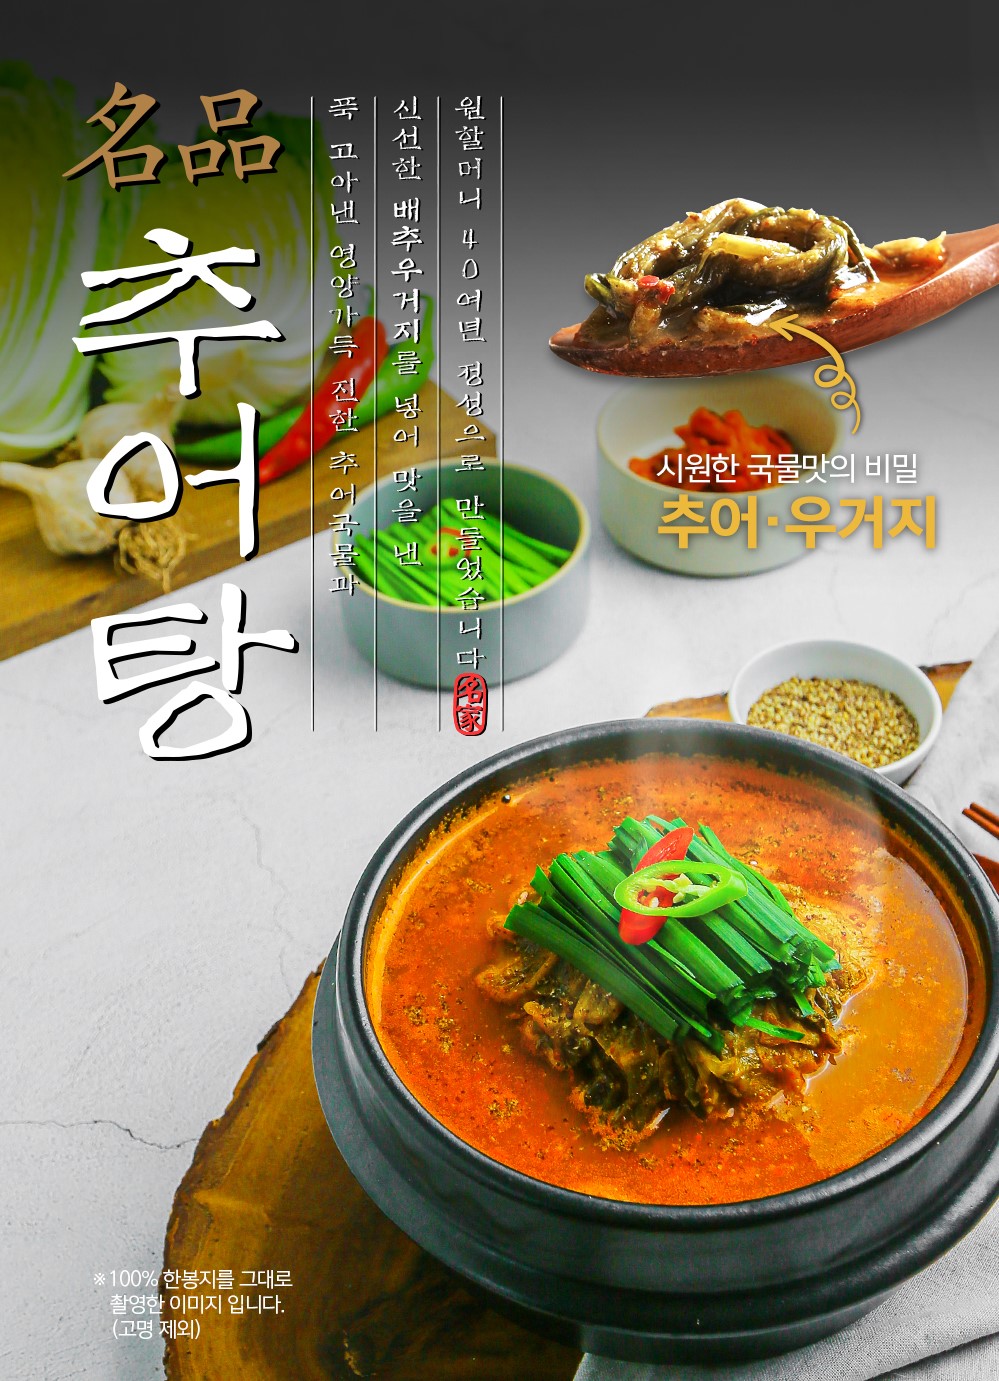 韓國食品-[1&1] 元祖奶奶名品白菜泥鰍湯 510g